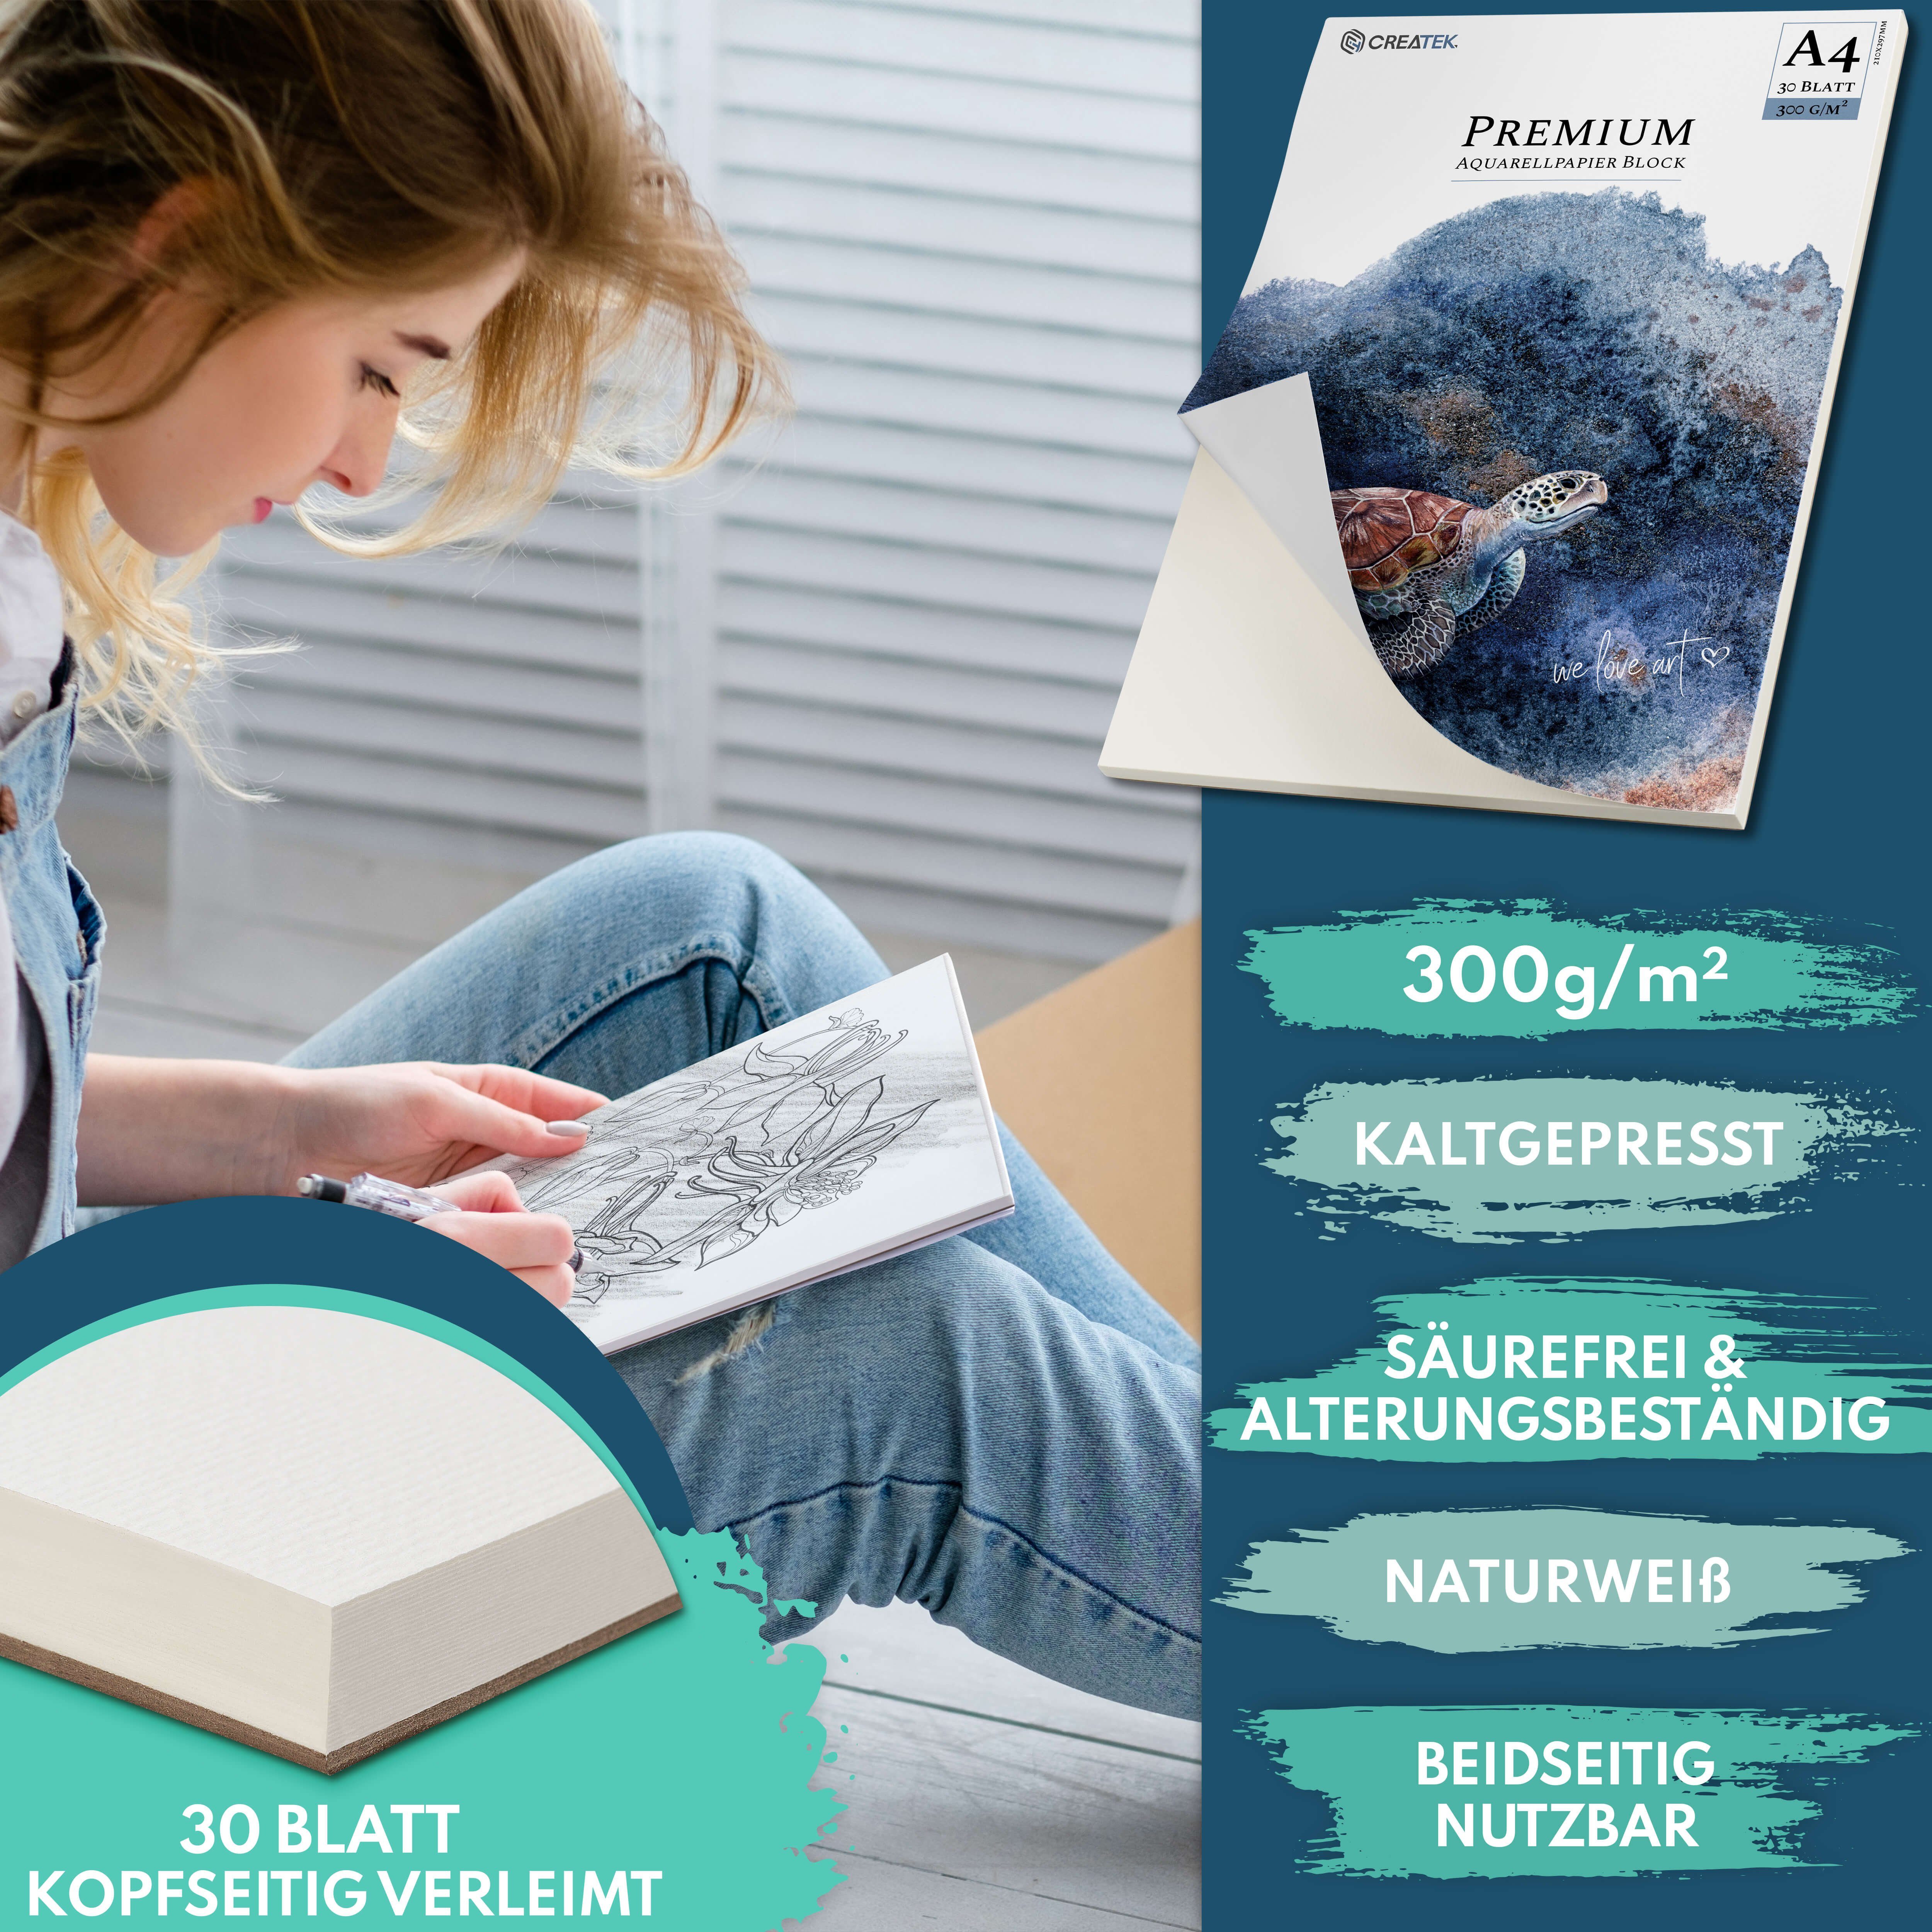 CreaTek Aquarellpapier 300g inkl. uvm., - MALVORLAGEN 2 diverse + Pinsel Größen STUNDEN Bleistift VIDEOKURS 400 Qualität & Premium